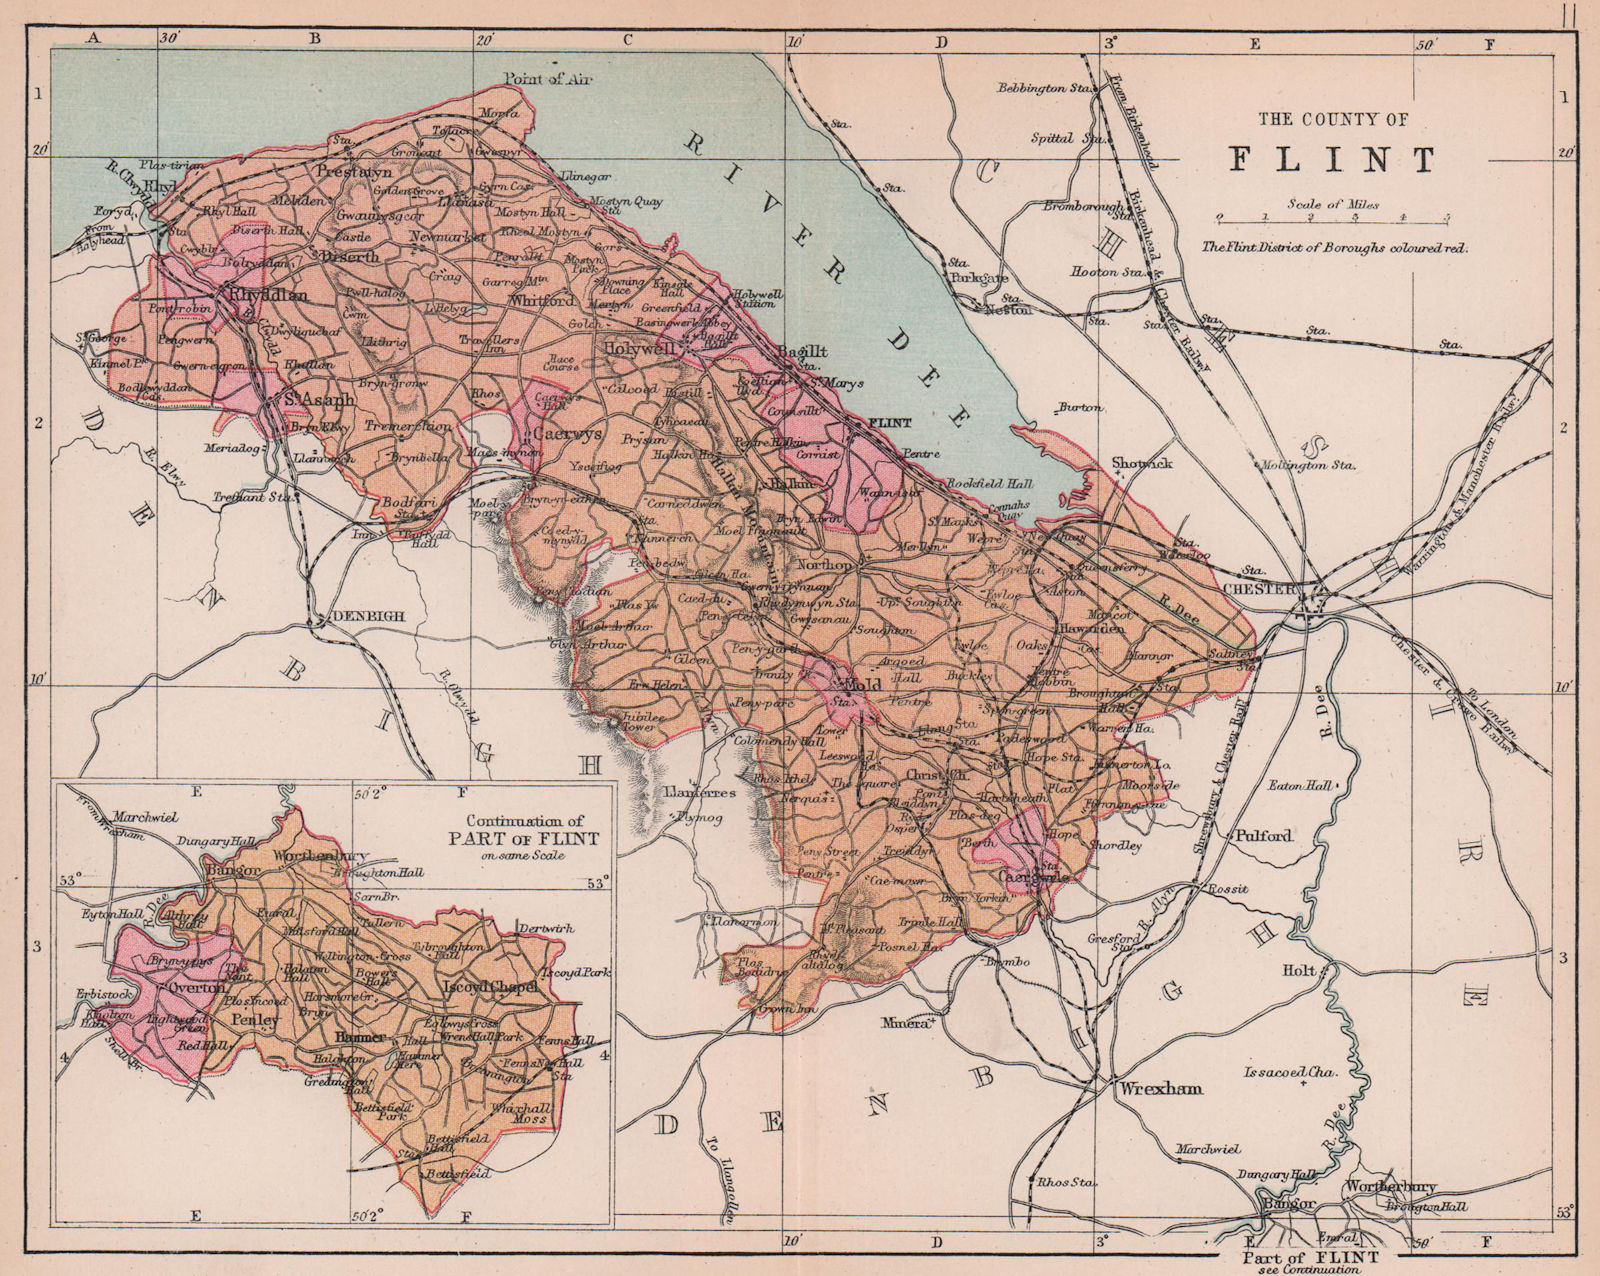 FLINTSHIRE "County of Flint" Rhyl Prestatyn Hawarden Wales BARTHOLOMEW 1882 map